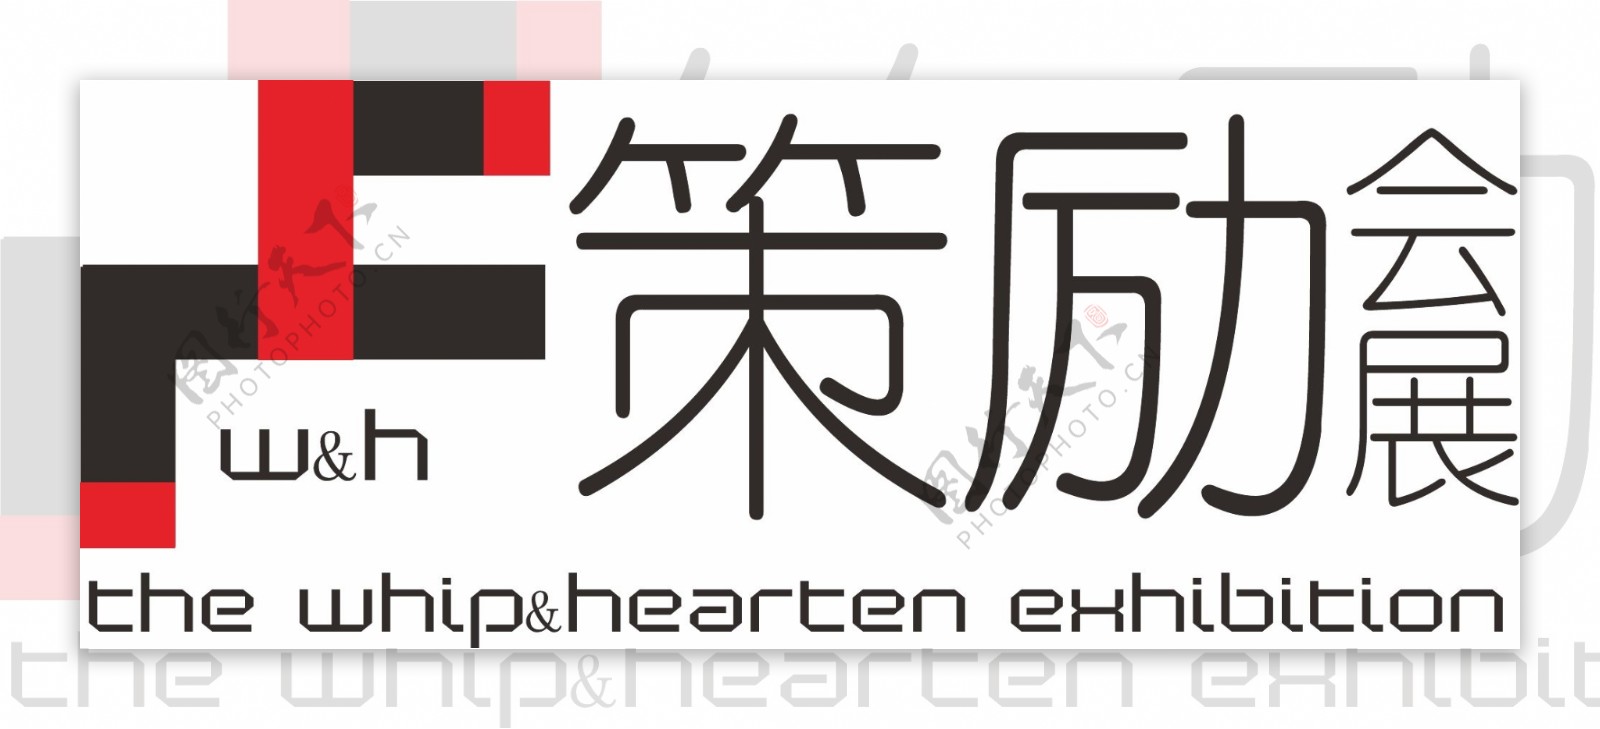 会展公司logo图片